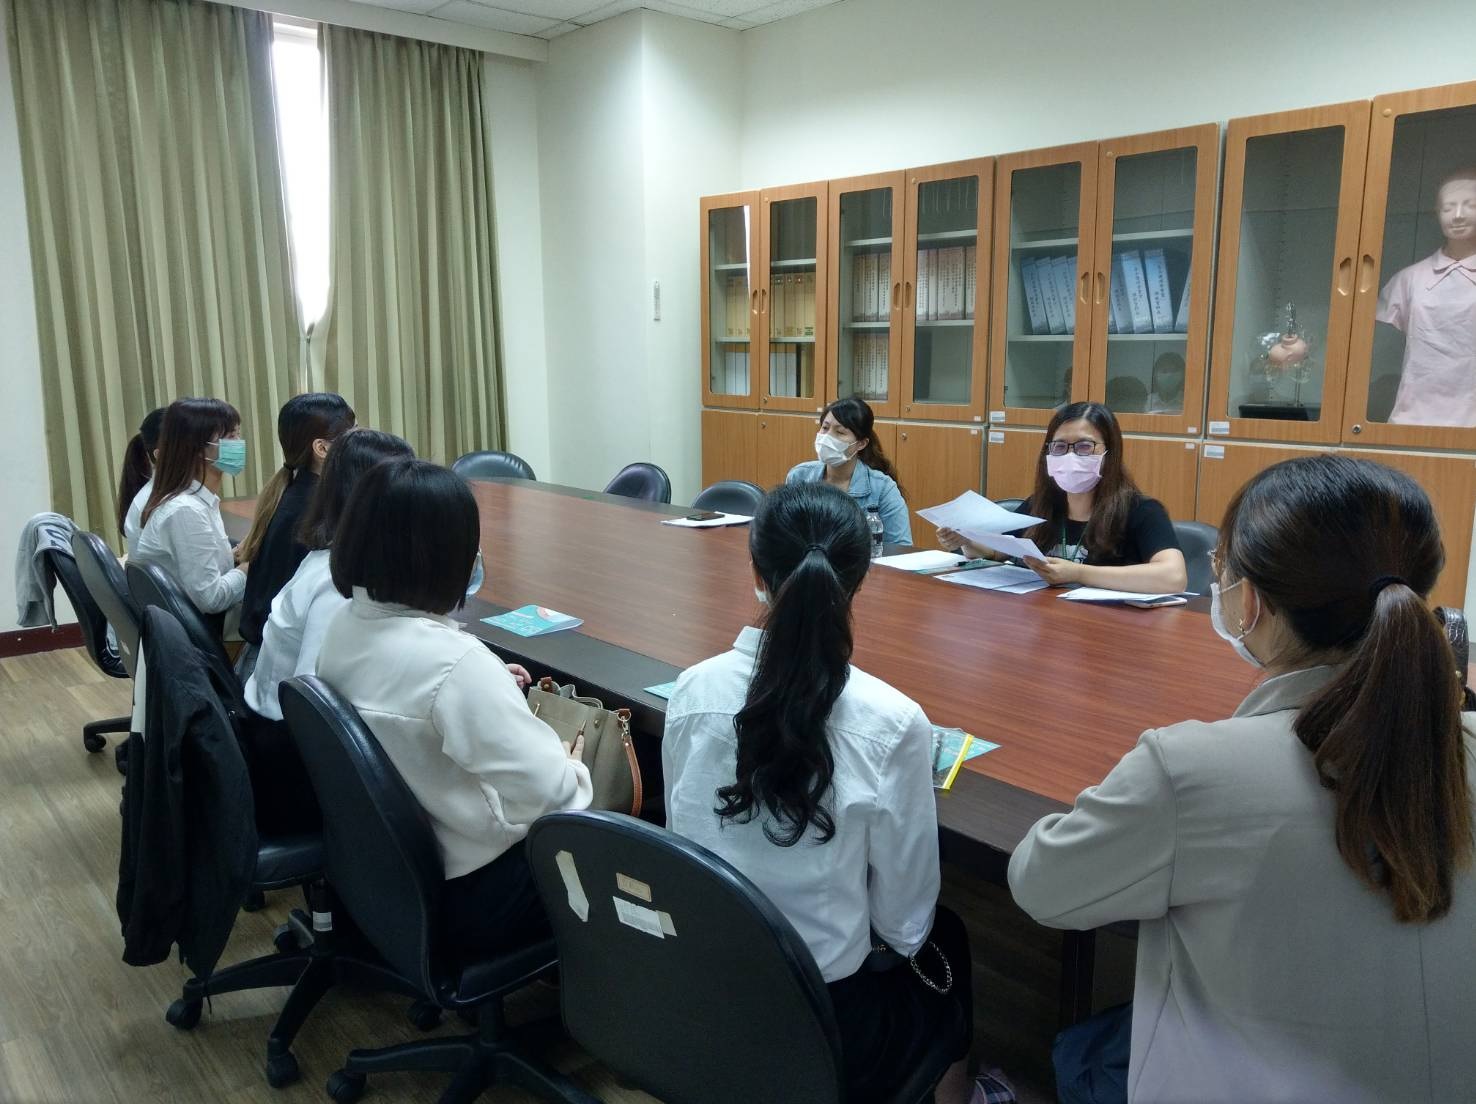 亞大附屬醫院督導莊錦娥、護理長蔣玉珍在護理系專業教室舉行就業團體面試。